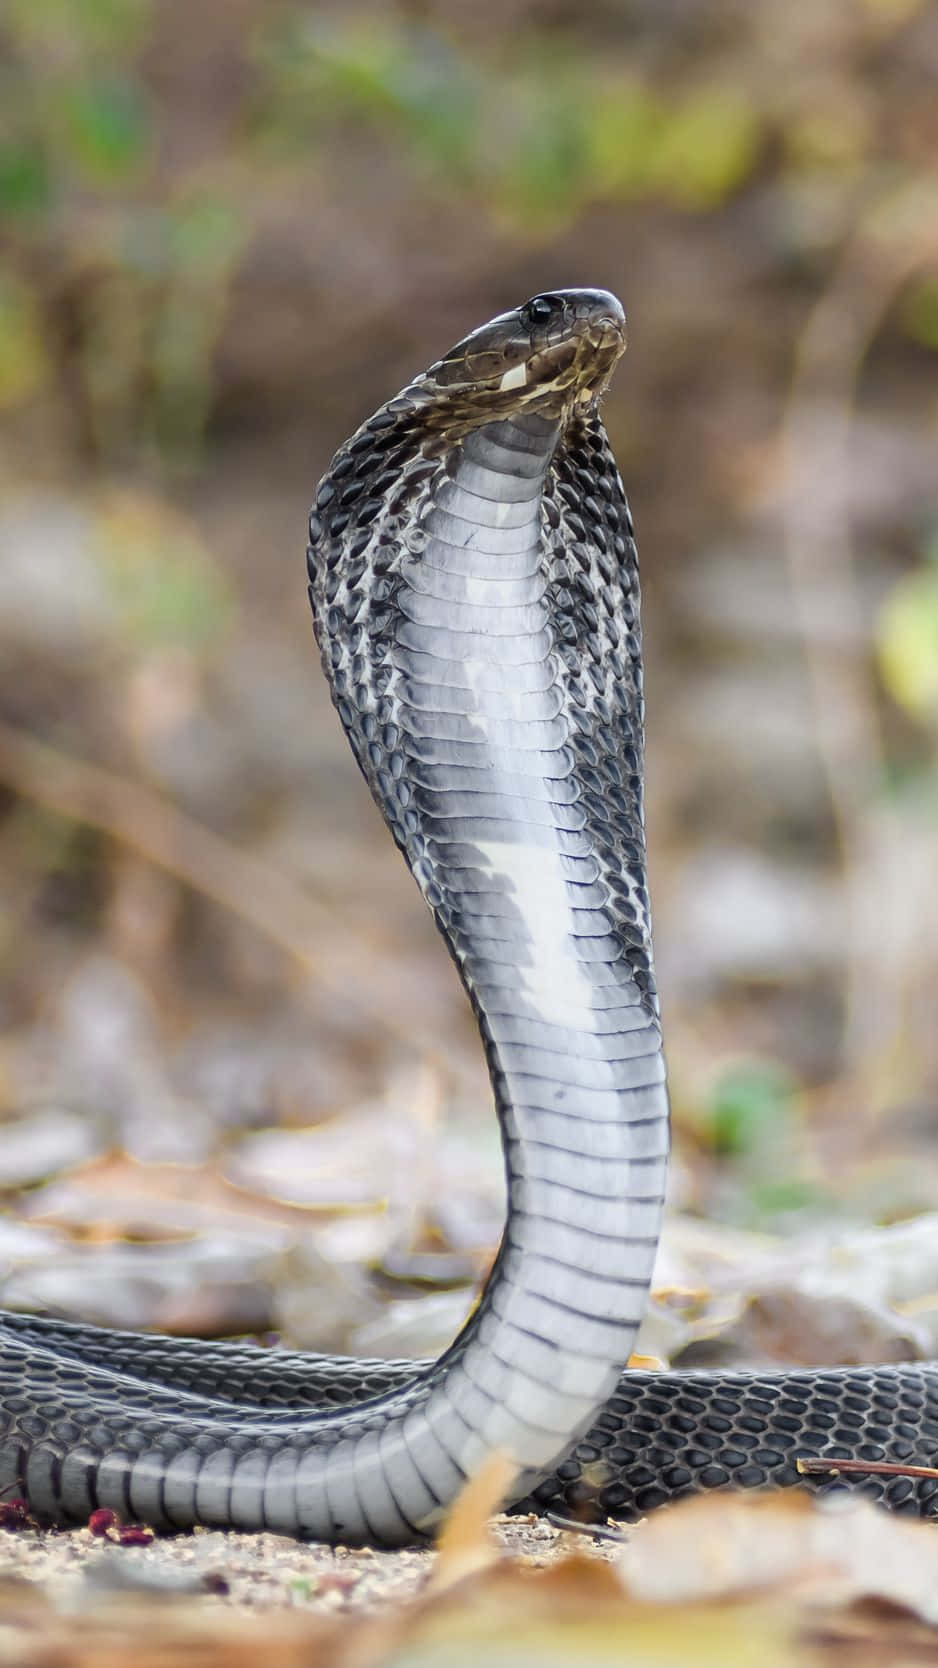 Tætbillede Af En Advarende Kongekobra-slange.